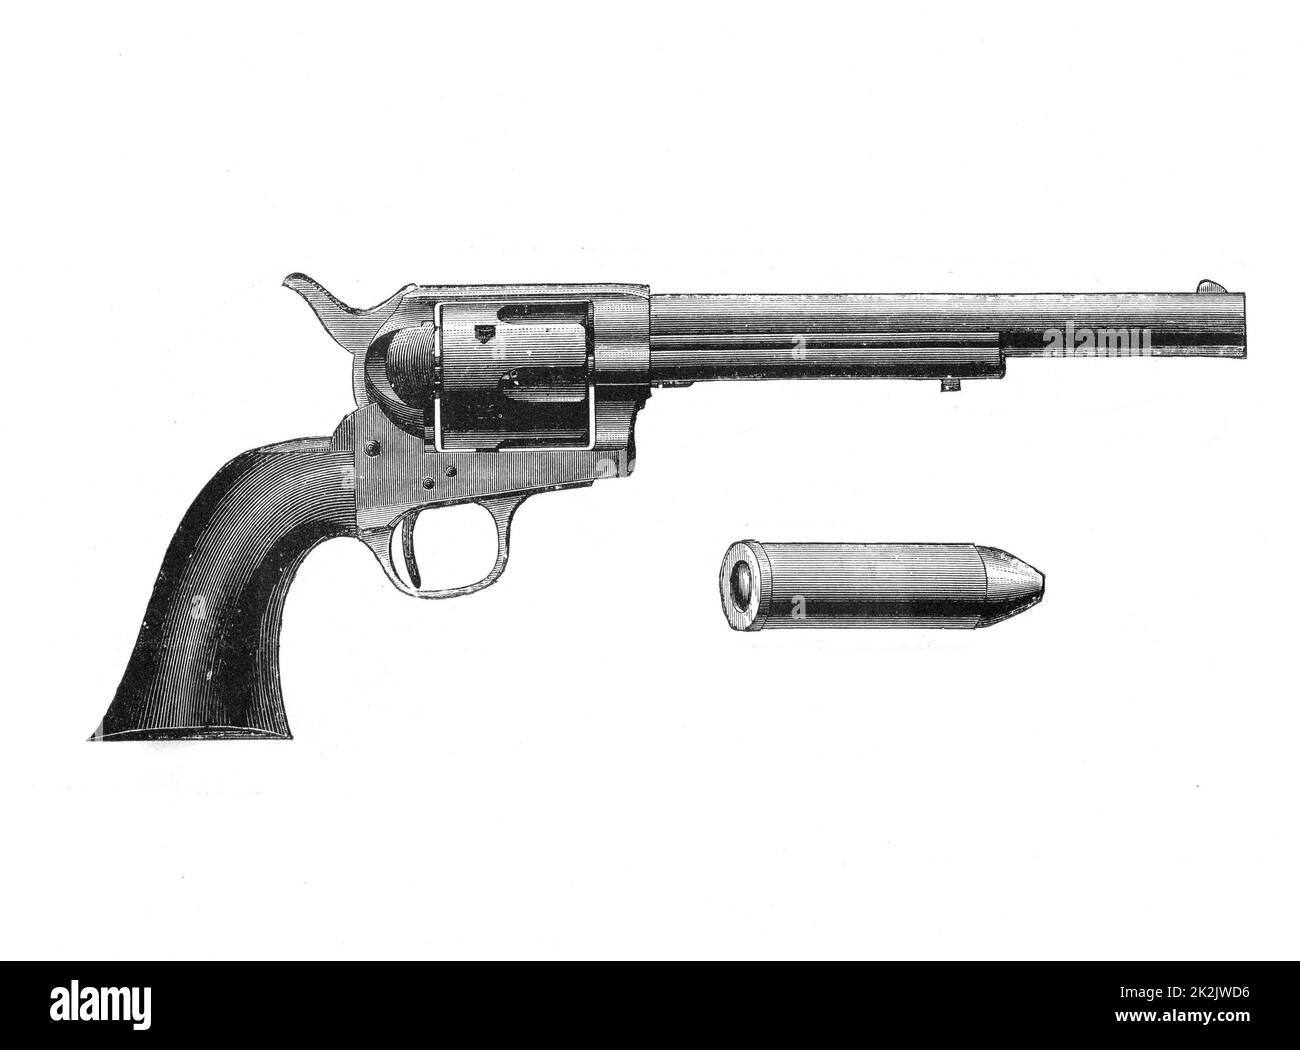 Colt „Frontier“-Revolver. Auch bekannt als „Colt“. Nach dem mexikanischen Krieg von 1846-48, wurde von der US-Armee adoptiert. Gravur, c. 1890 Stockfoto